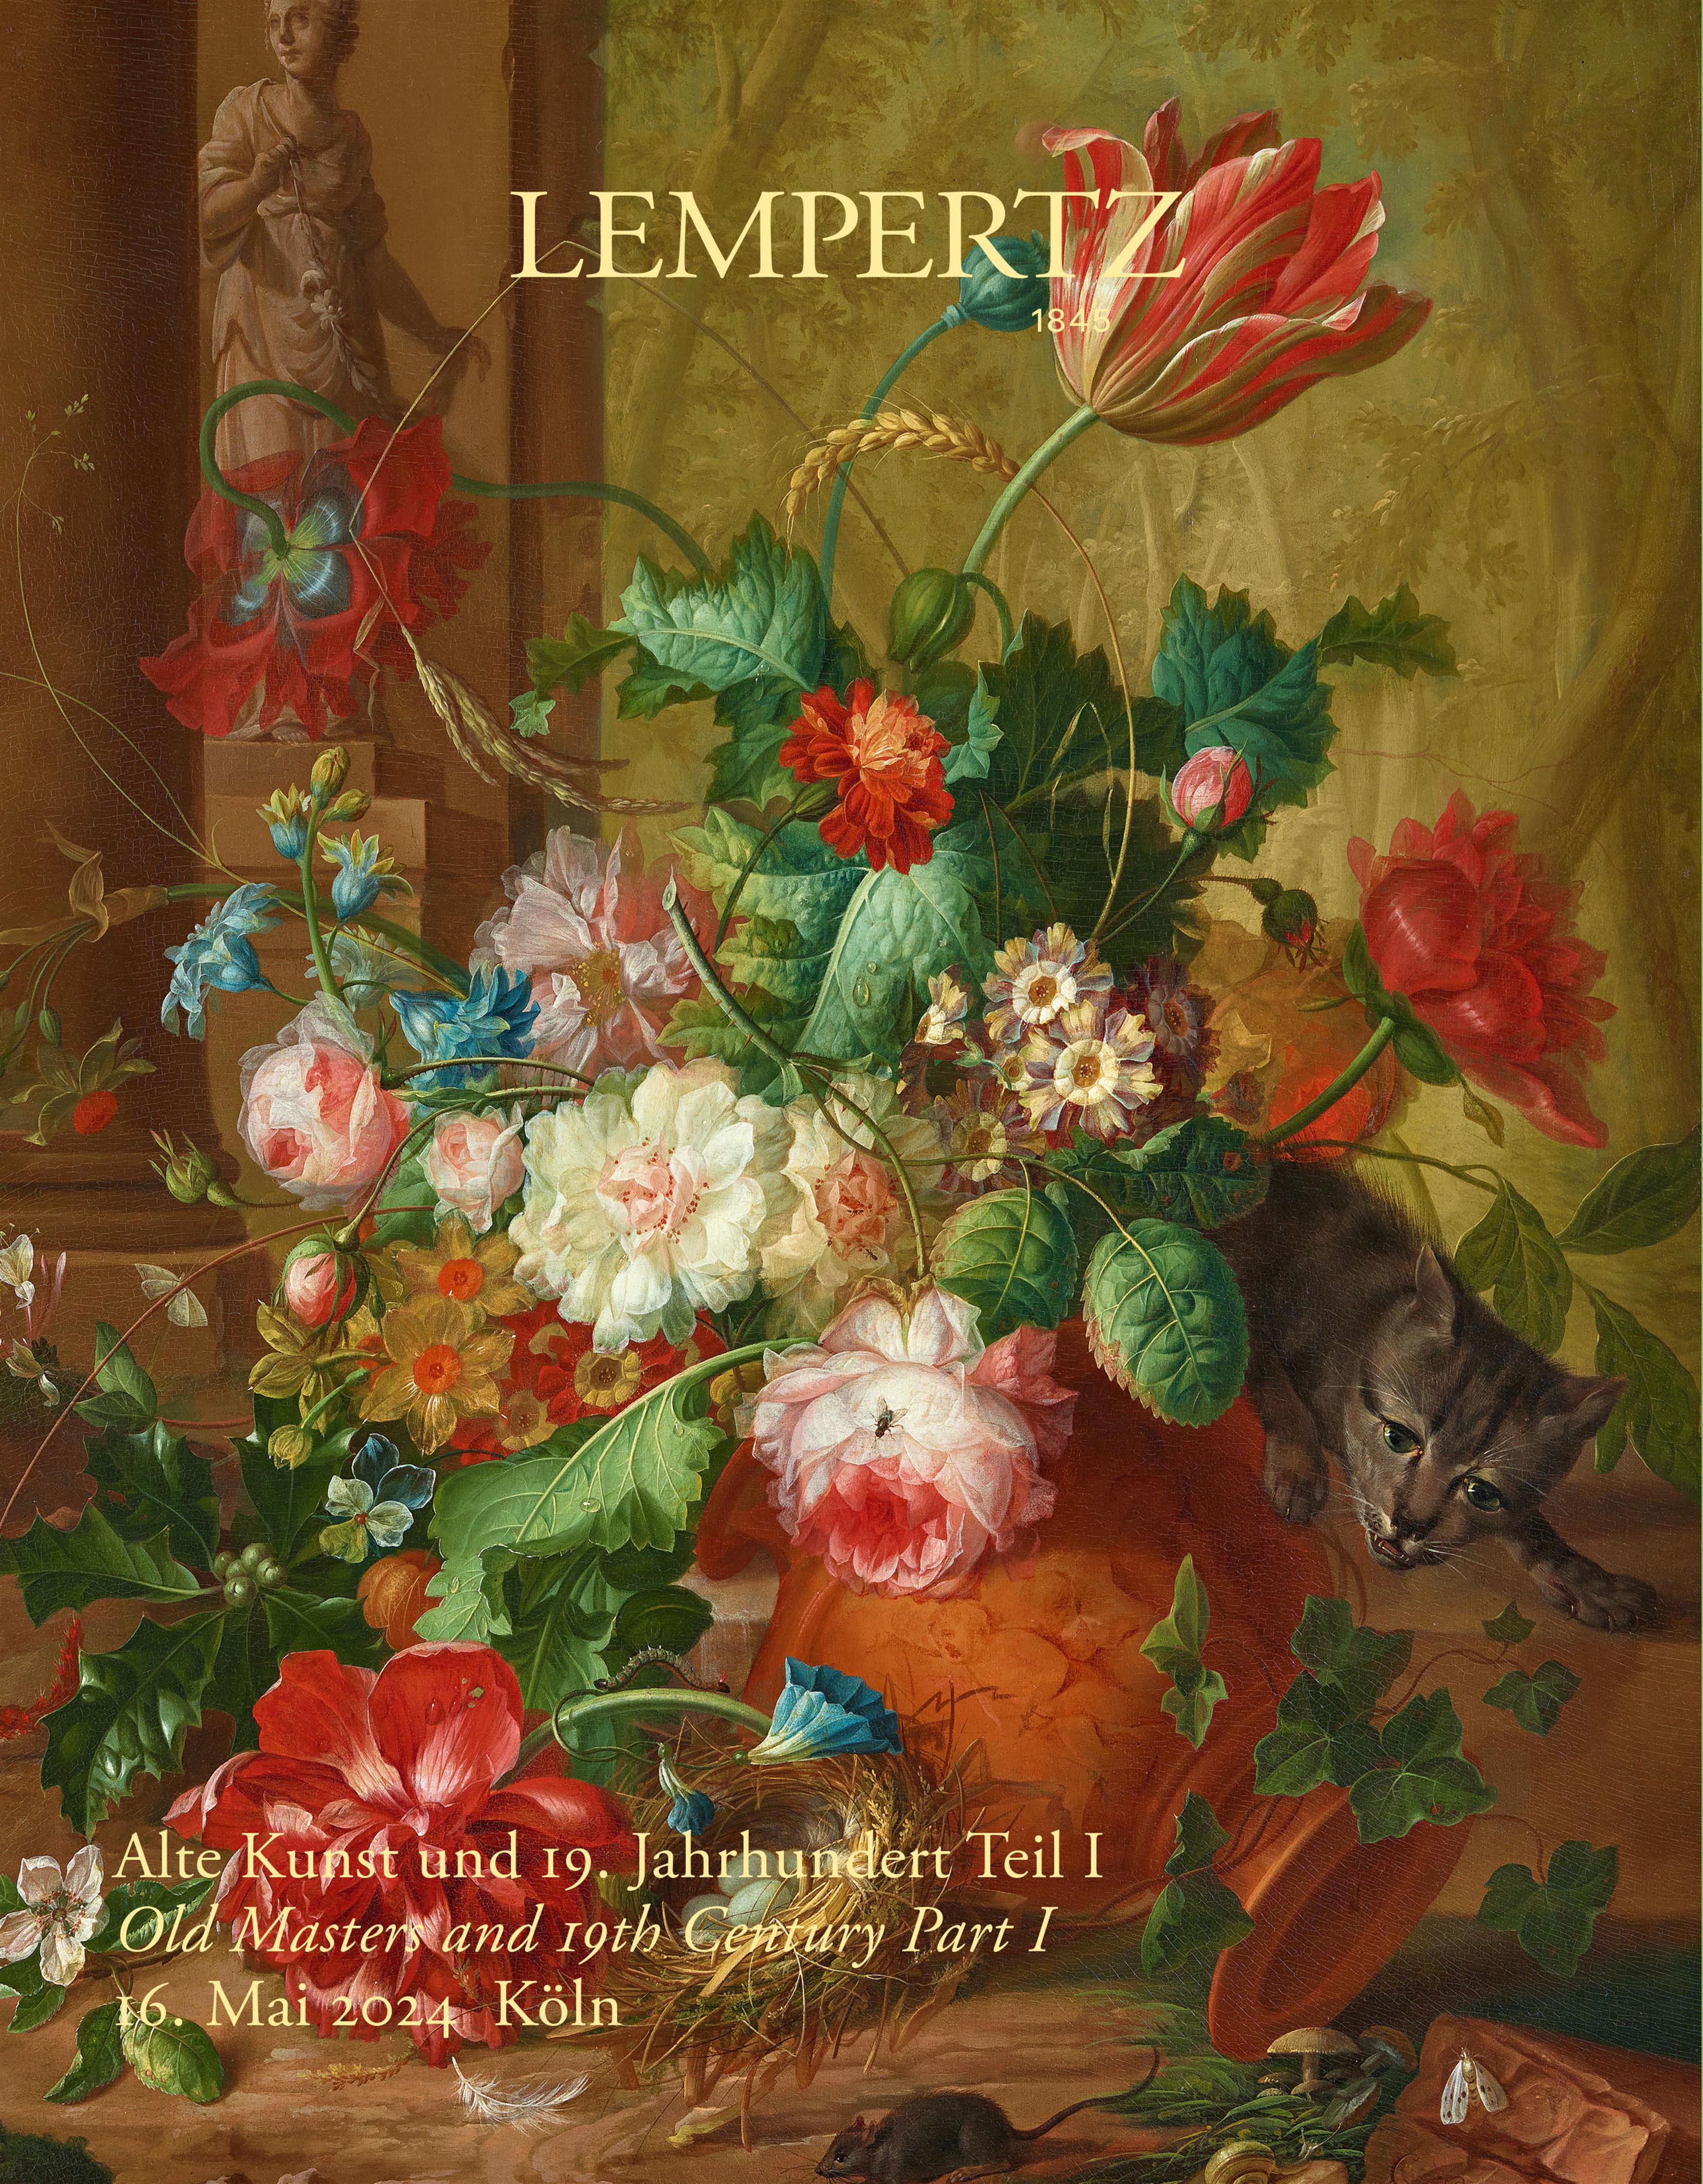 Auktionskatalog - Alte Kunst und 19. Jahrhundert, Teil I. - Online Katalog - Auktion 1245 – Ersteigern Sie hochwertige Kunst in der nächsten Lempertz-Auktion!